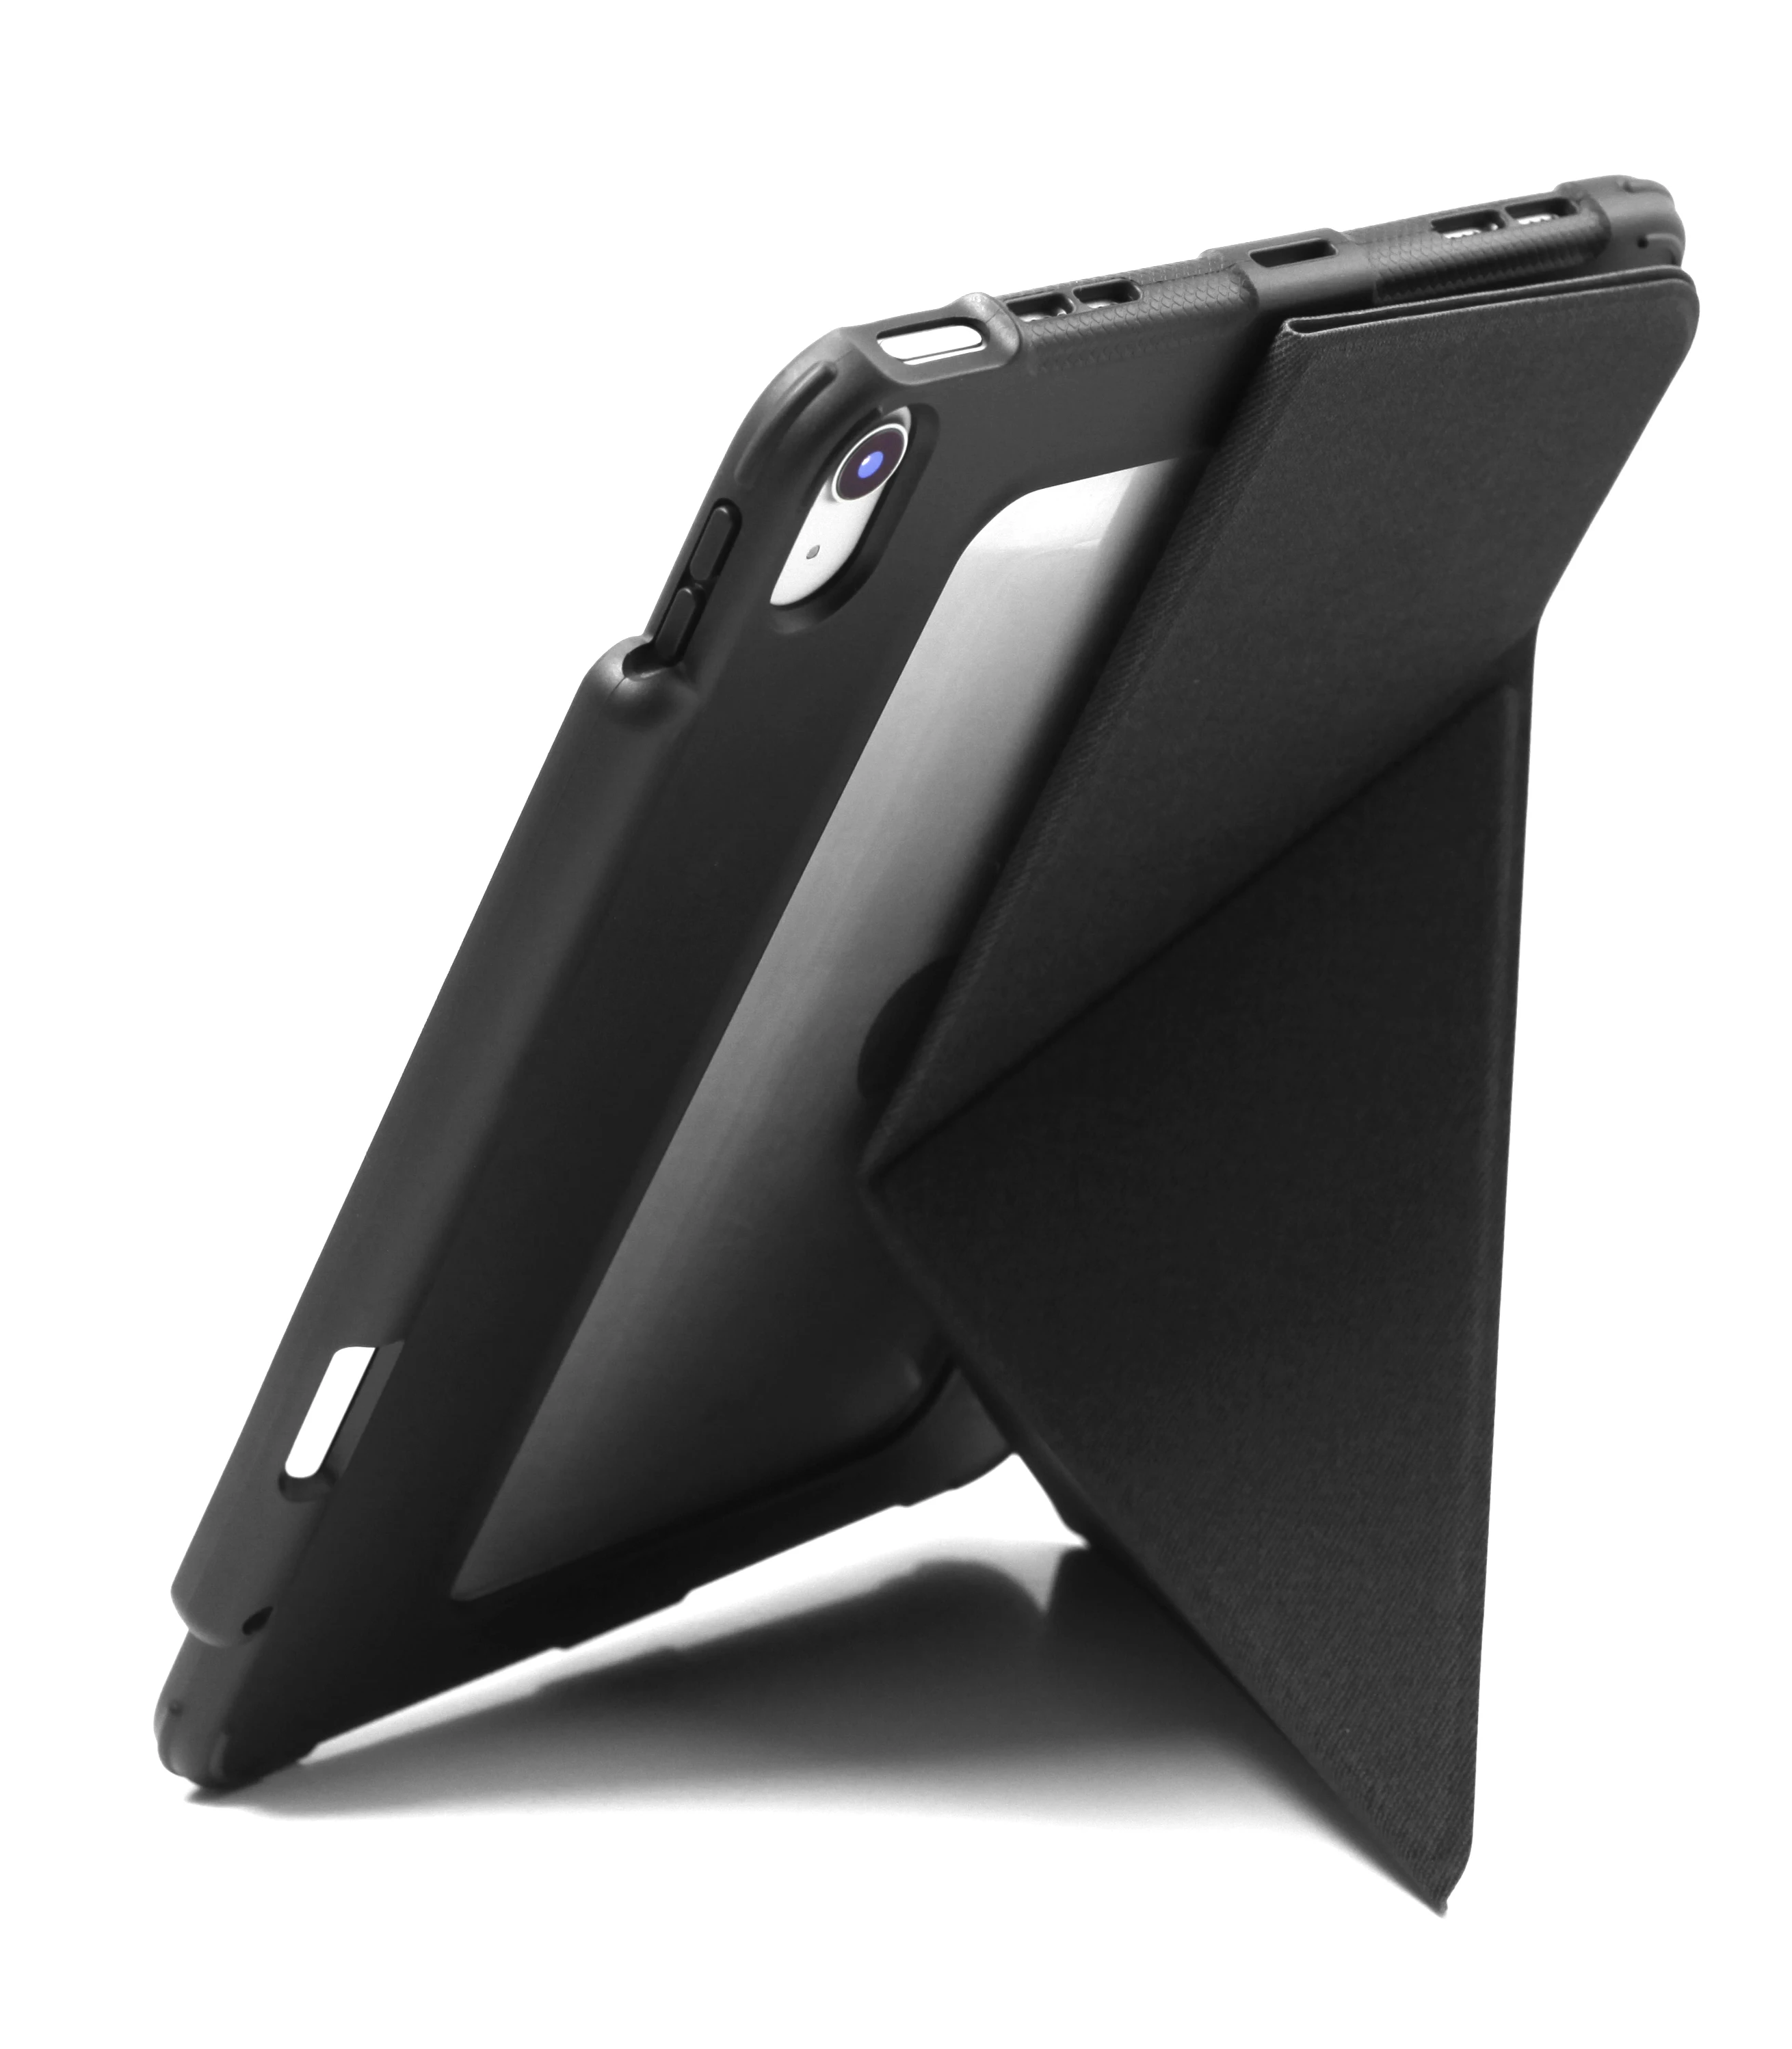 KHOMO iPad Gaisa 4. Gadījums 10.9 2020. Gadam Dual Origami Hibrīda Antishock ar Pildspalvu - Melna